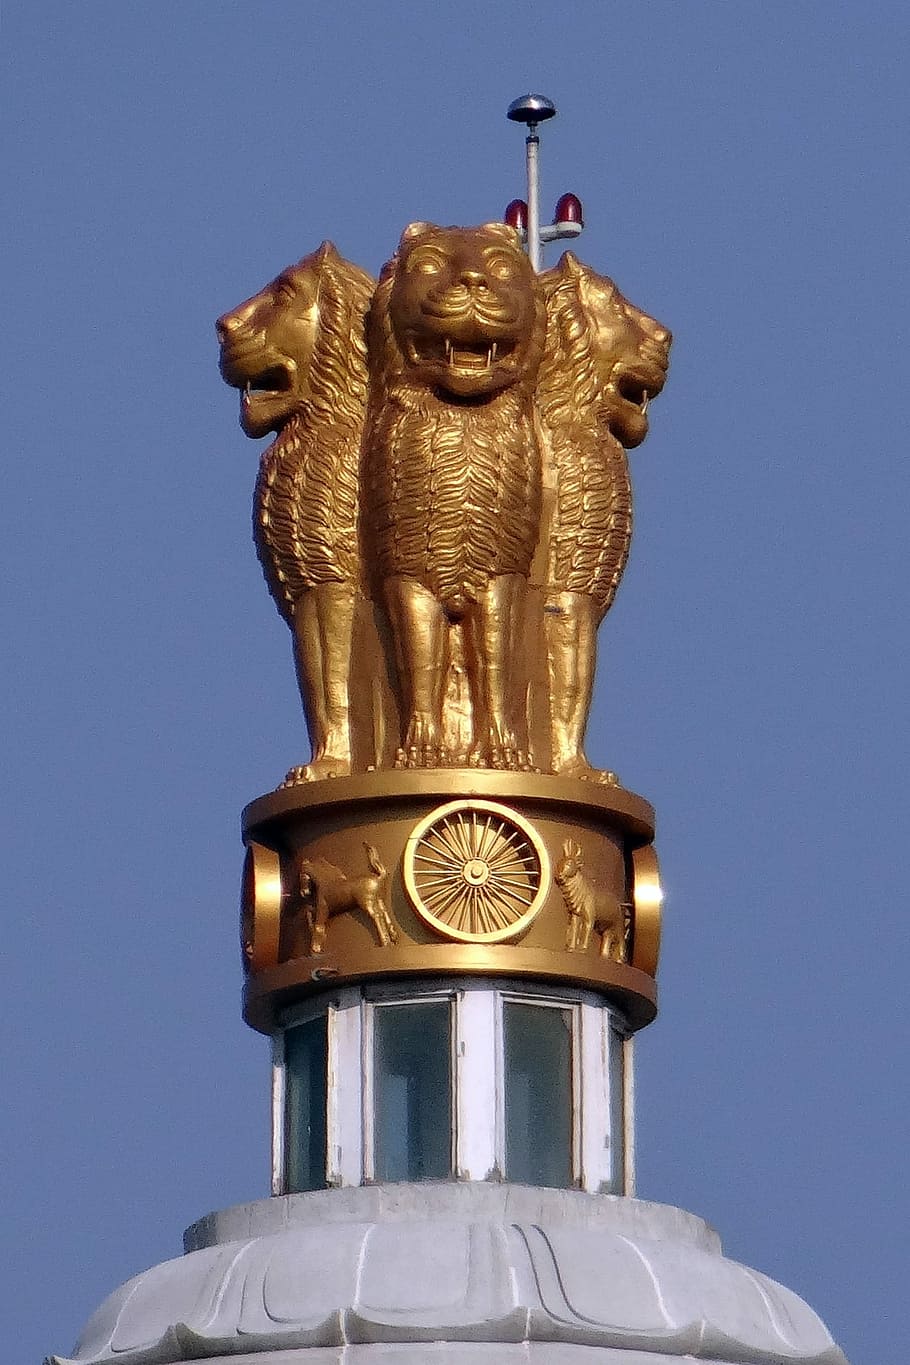 national, emblem, National Emblem, Lion Capital, ashoka chakra, suvarna vidhana soudha, belgaum, legislative building, architecture, karnataka